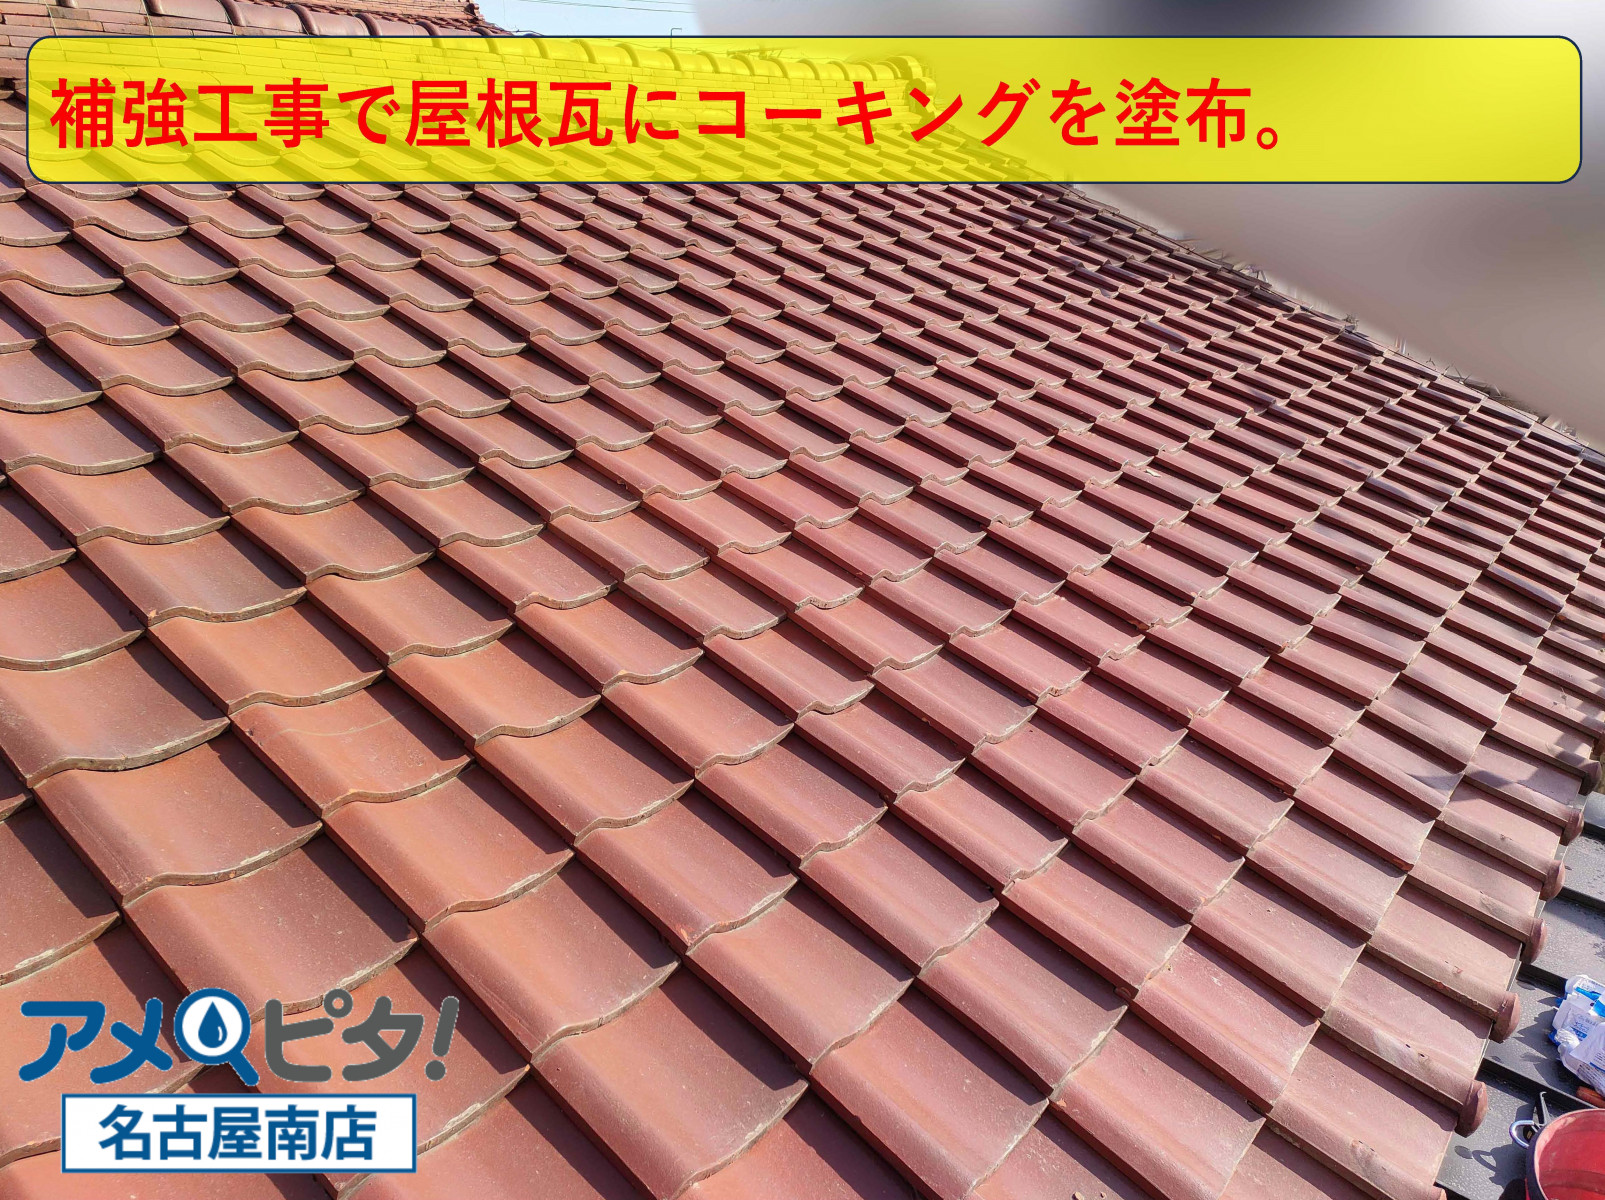 東浦町にて古い屋根瓦に飛散防止でコーキングボンドを塗って固定作業を施します